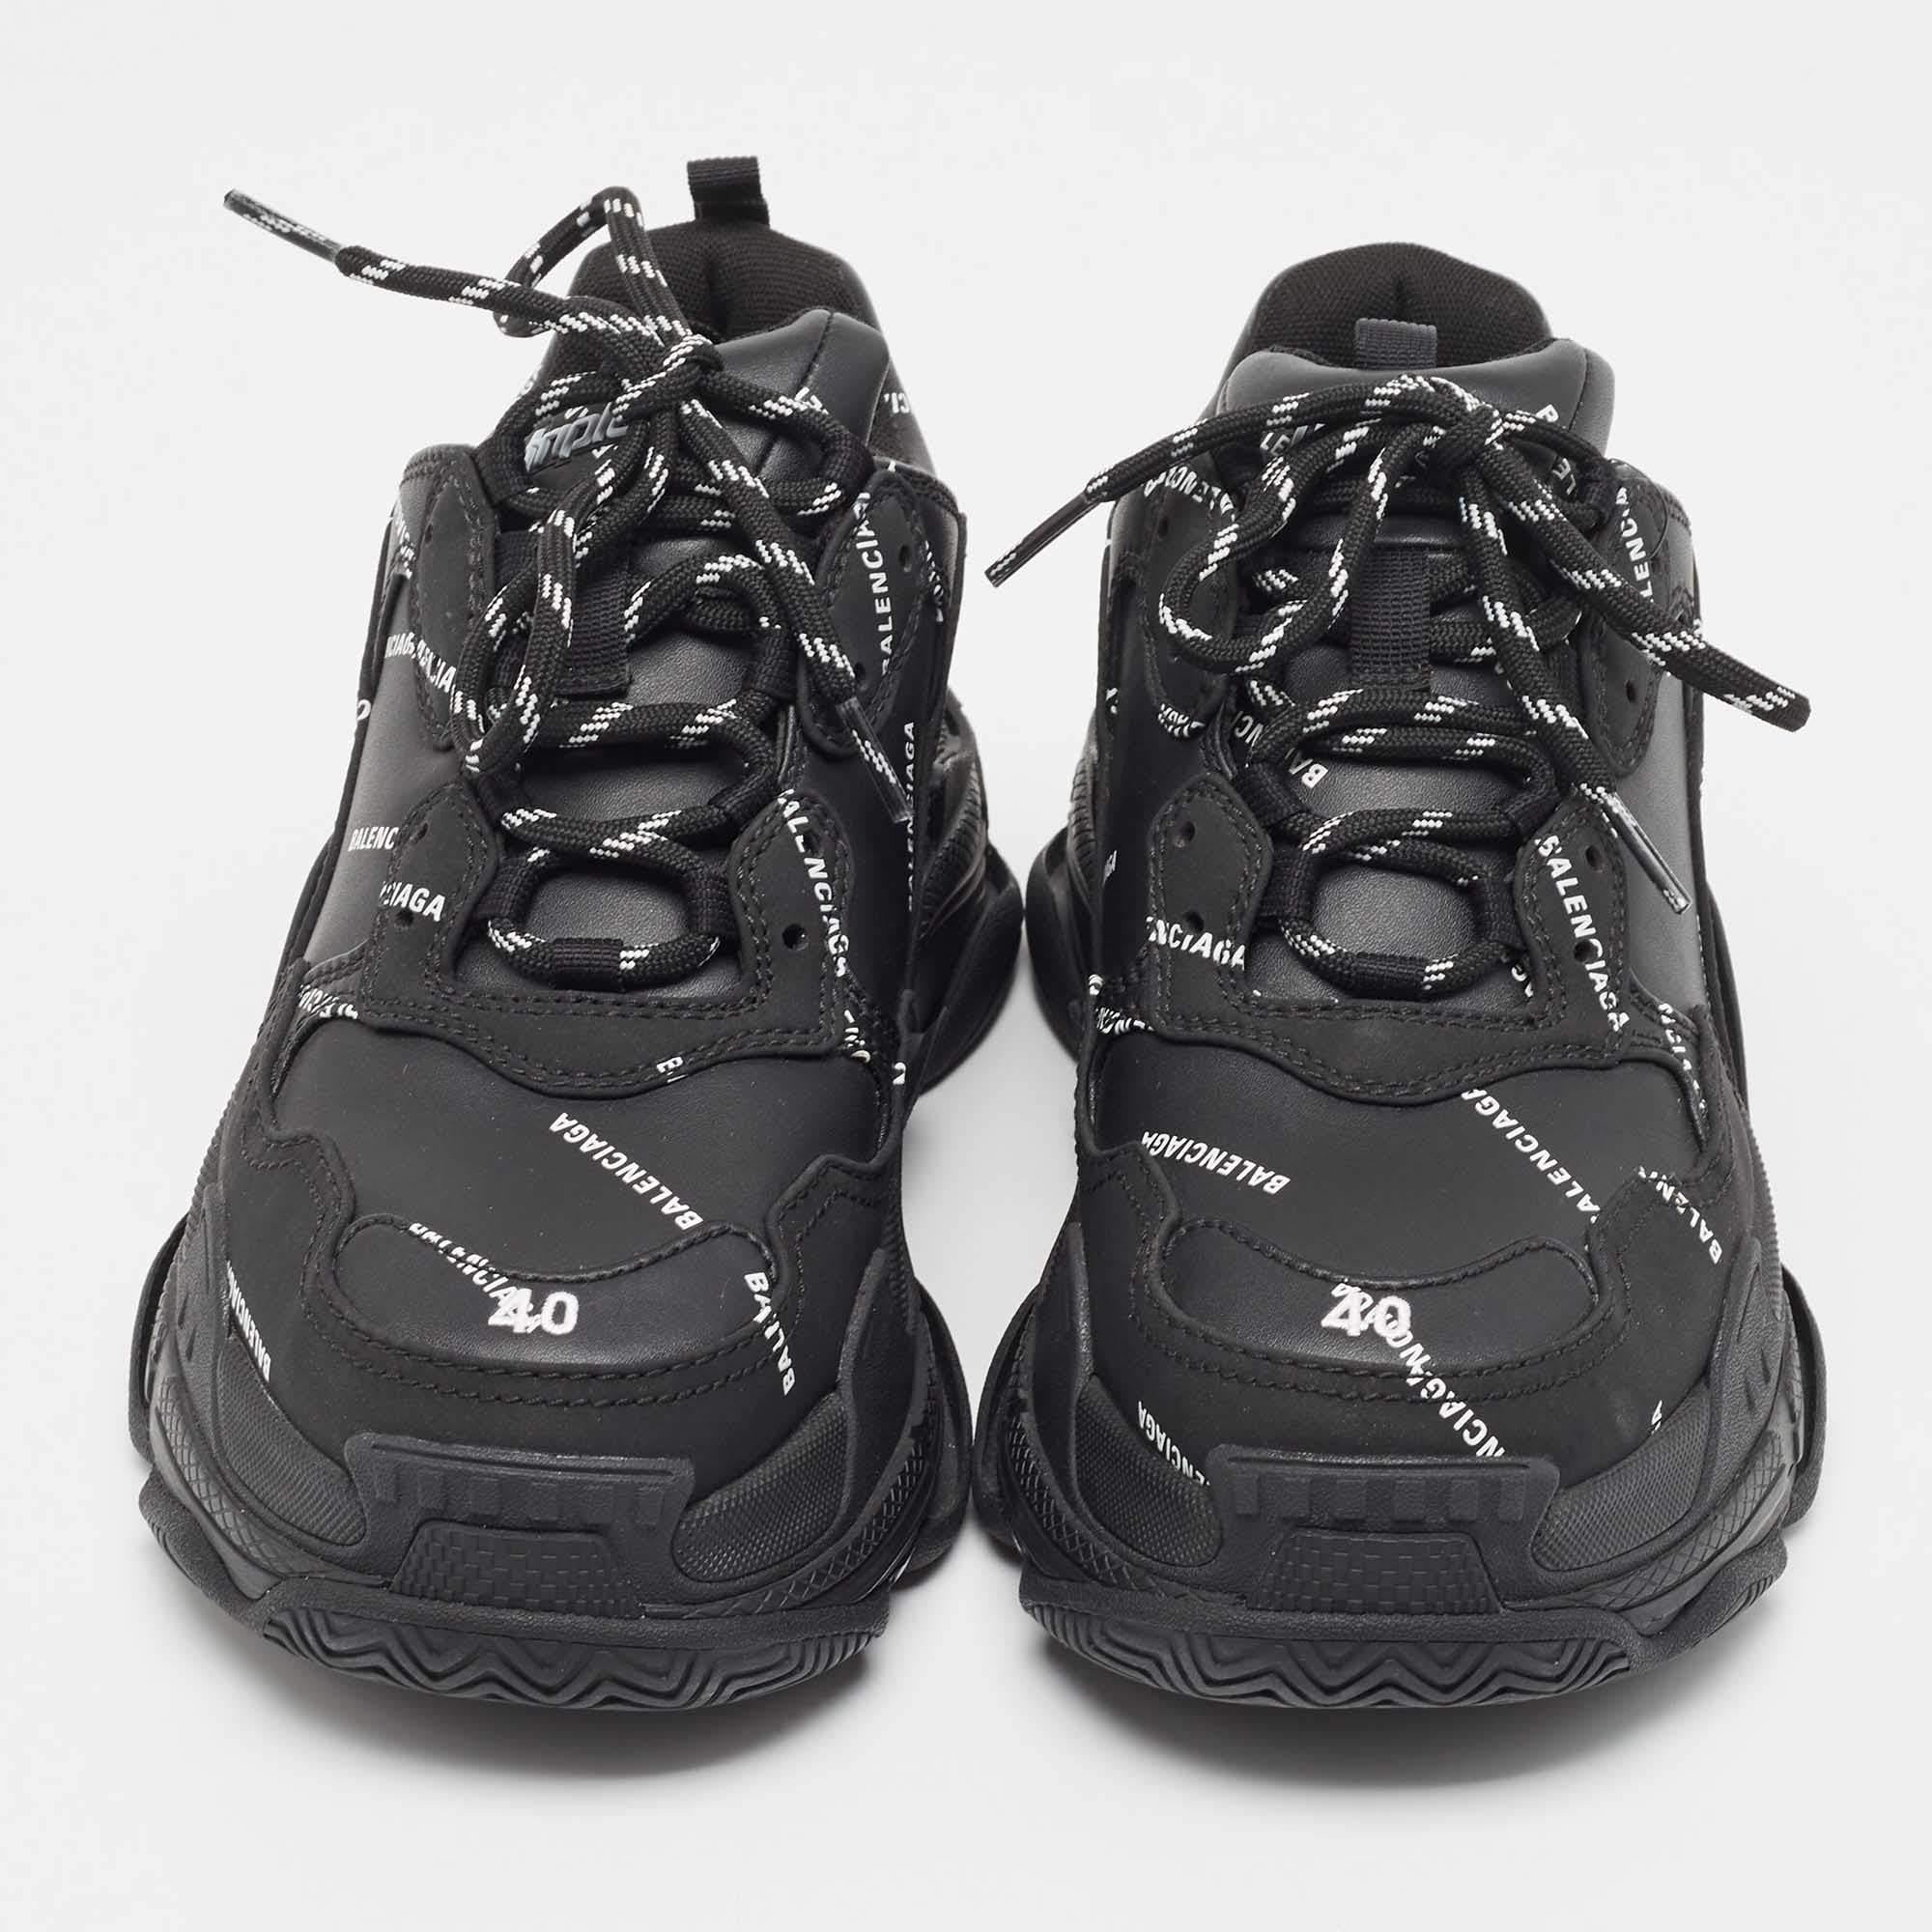 La Triple S de Balenciaga est l'un des modèles de chaussures de sport les plus célèbres au monde. Ces chaussures sont fabriquées à partir d'un mélange de matériaux et ont une taille imposante, grâce à des semelles hautes et complexes. Elles